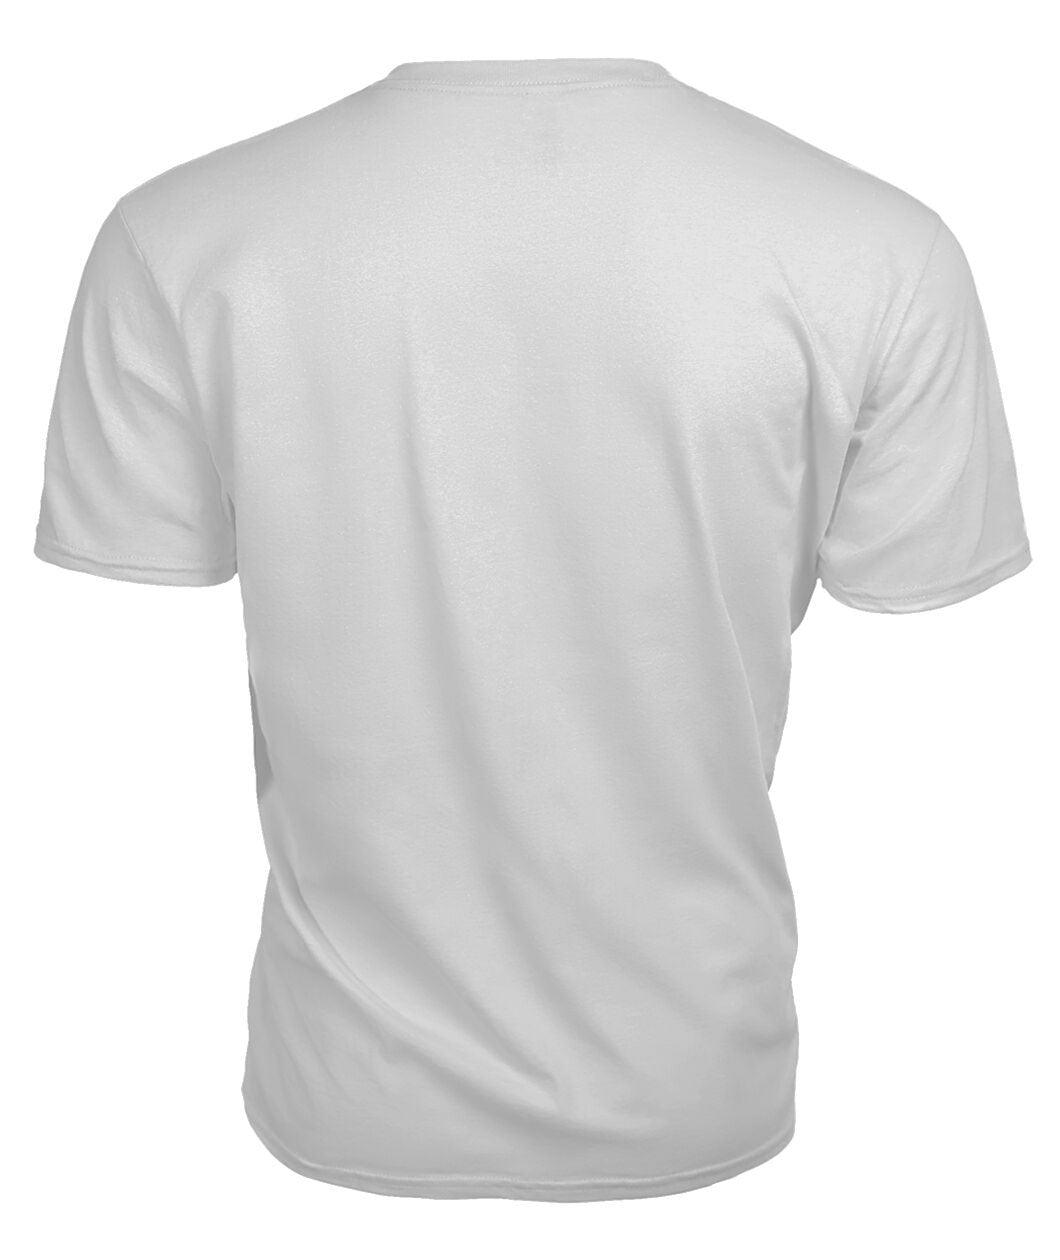 Ross Hunting Modern Tartan Crest 2D T-shirt - Blood Runs Through My Veins Style